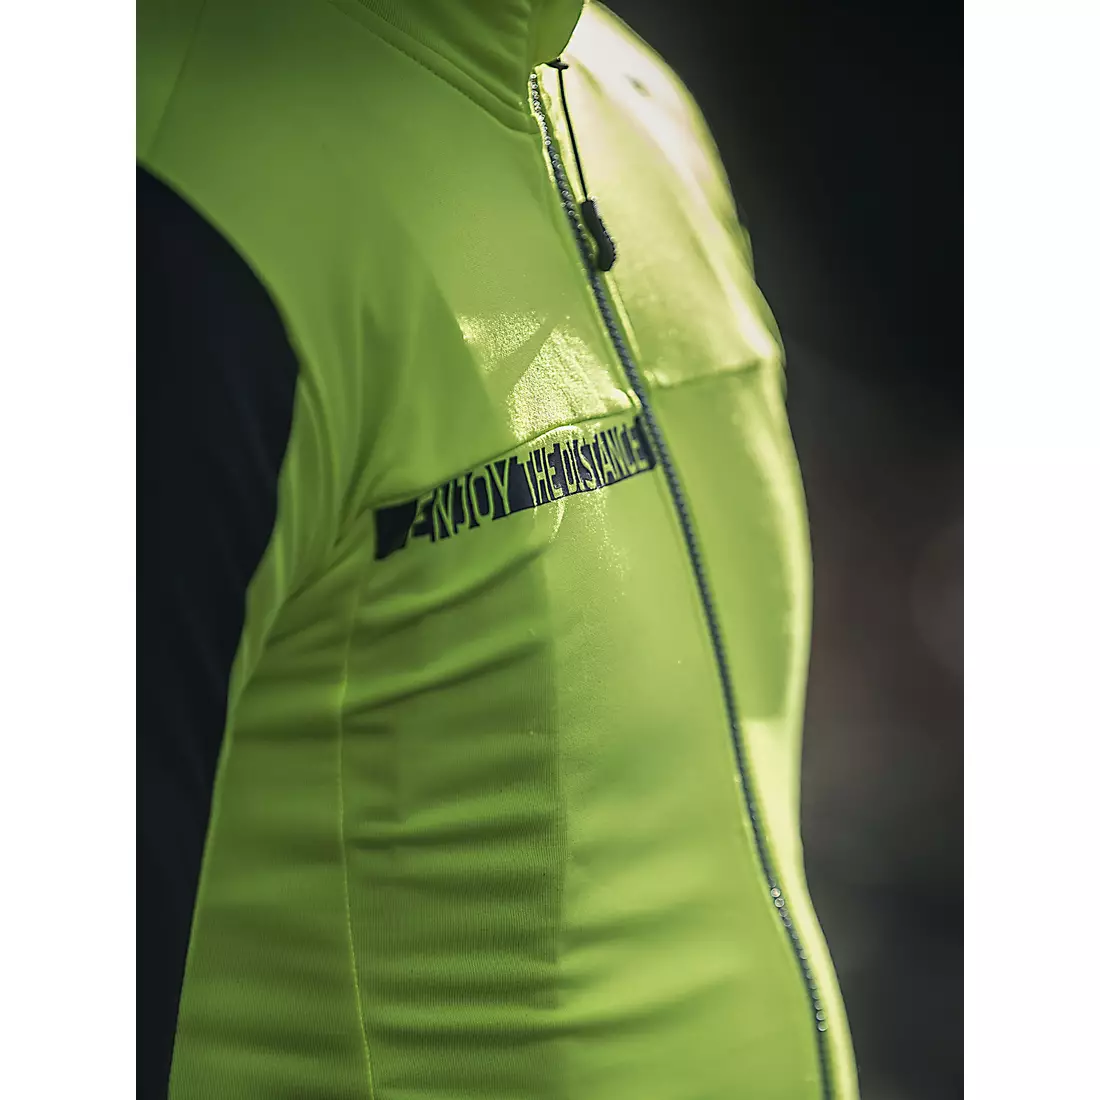 ROGELLI AQUABLOCK tricou cald de ciclism, fluor